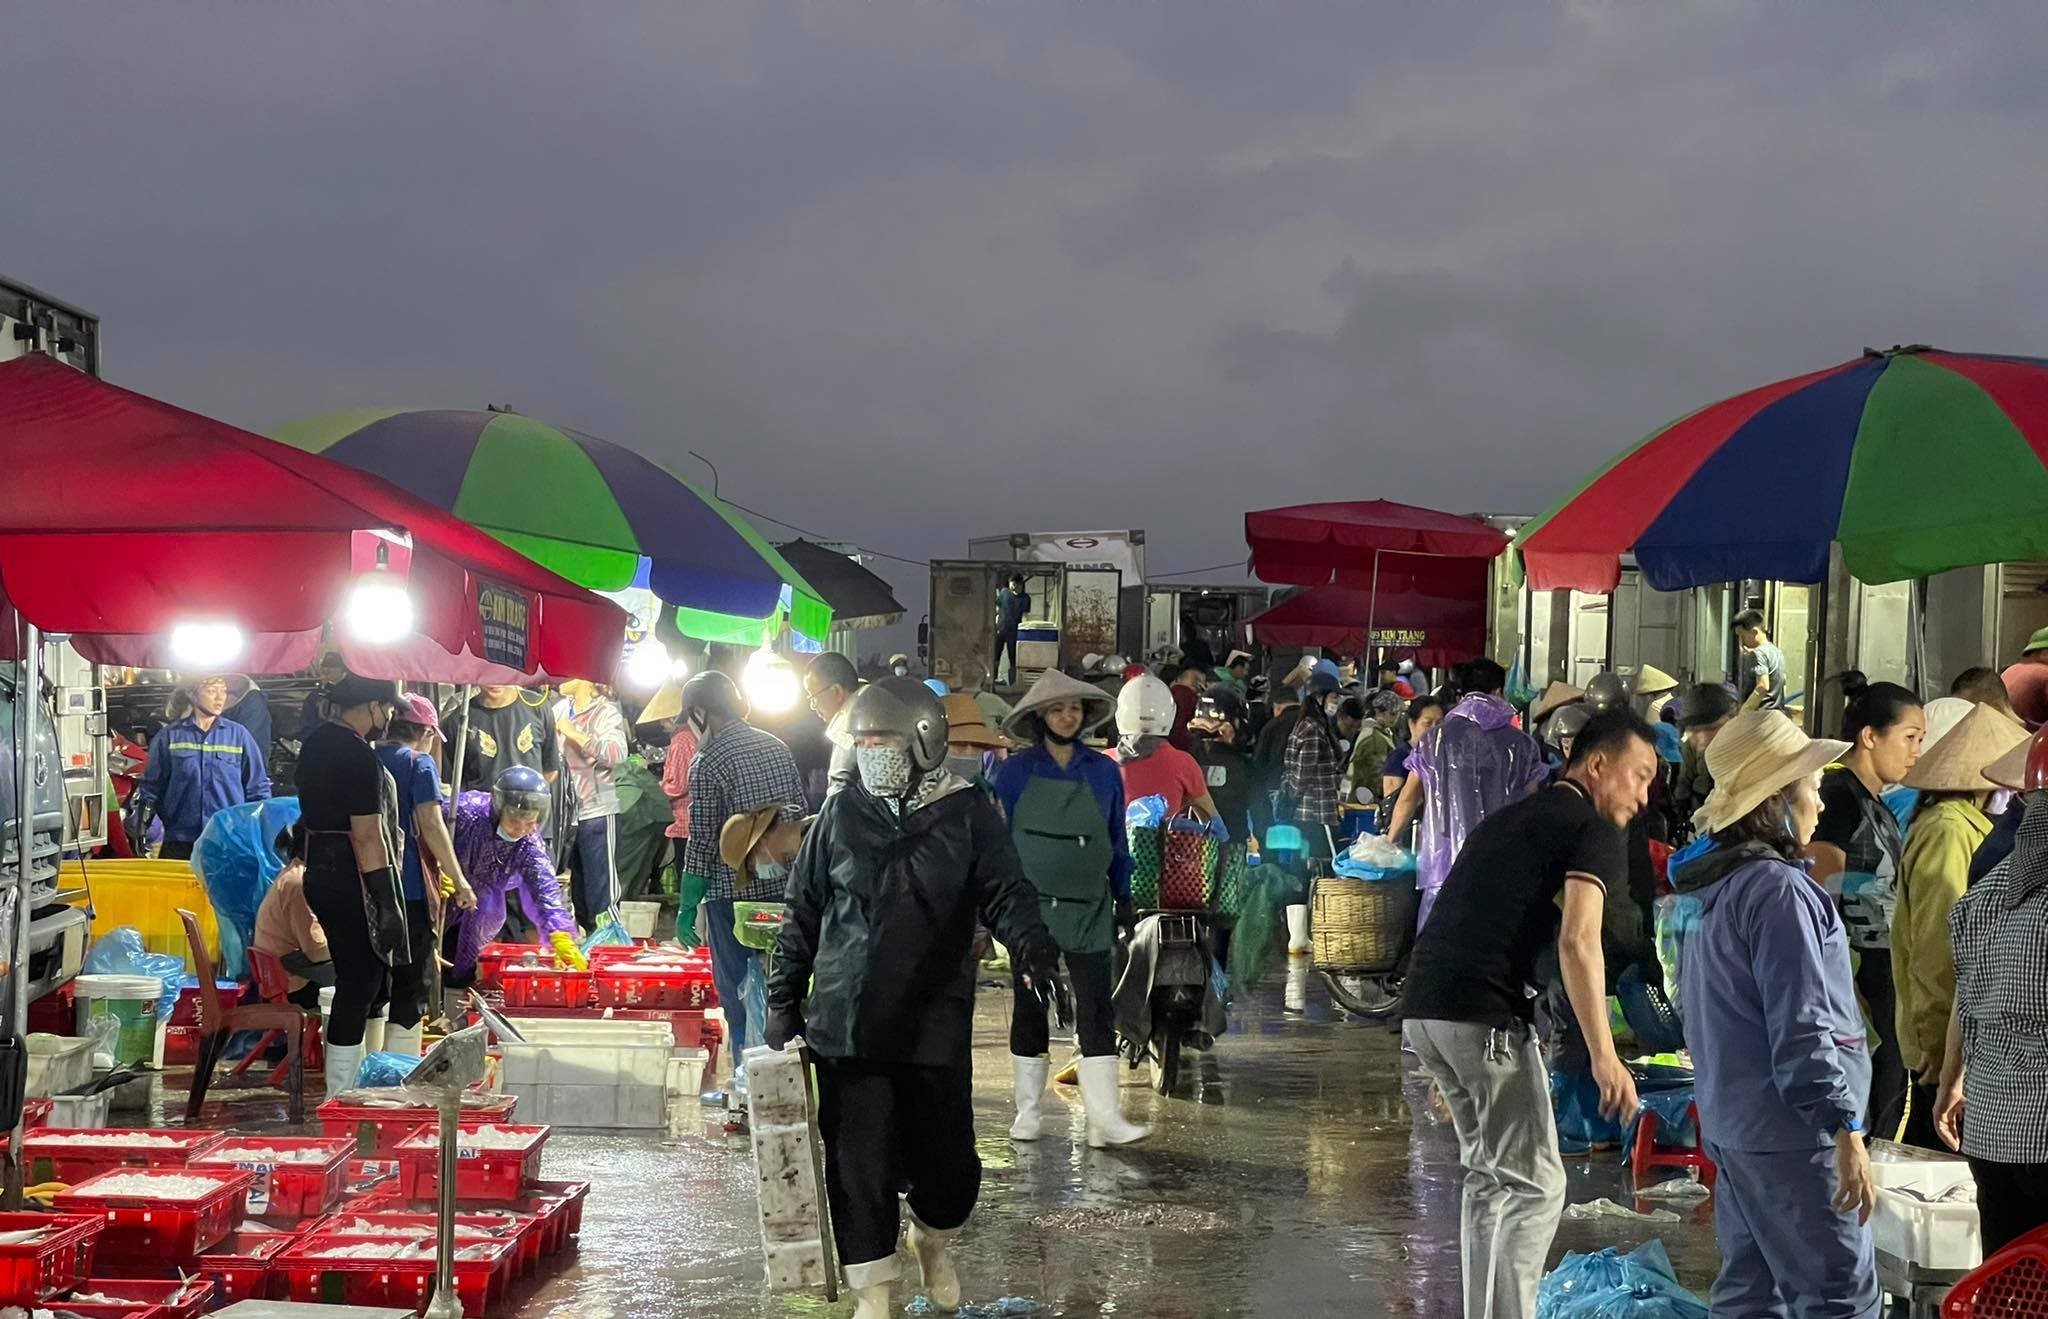 Chợ cá sớm lớn nhất và nhộn nhịp nhất Hạ Long, khu chợ họp từ lúc nửa đêm đến sáng. (Nguồn ảnh: Vietnamnet.vn)